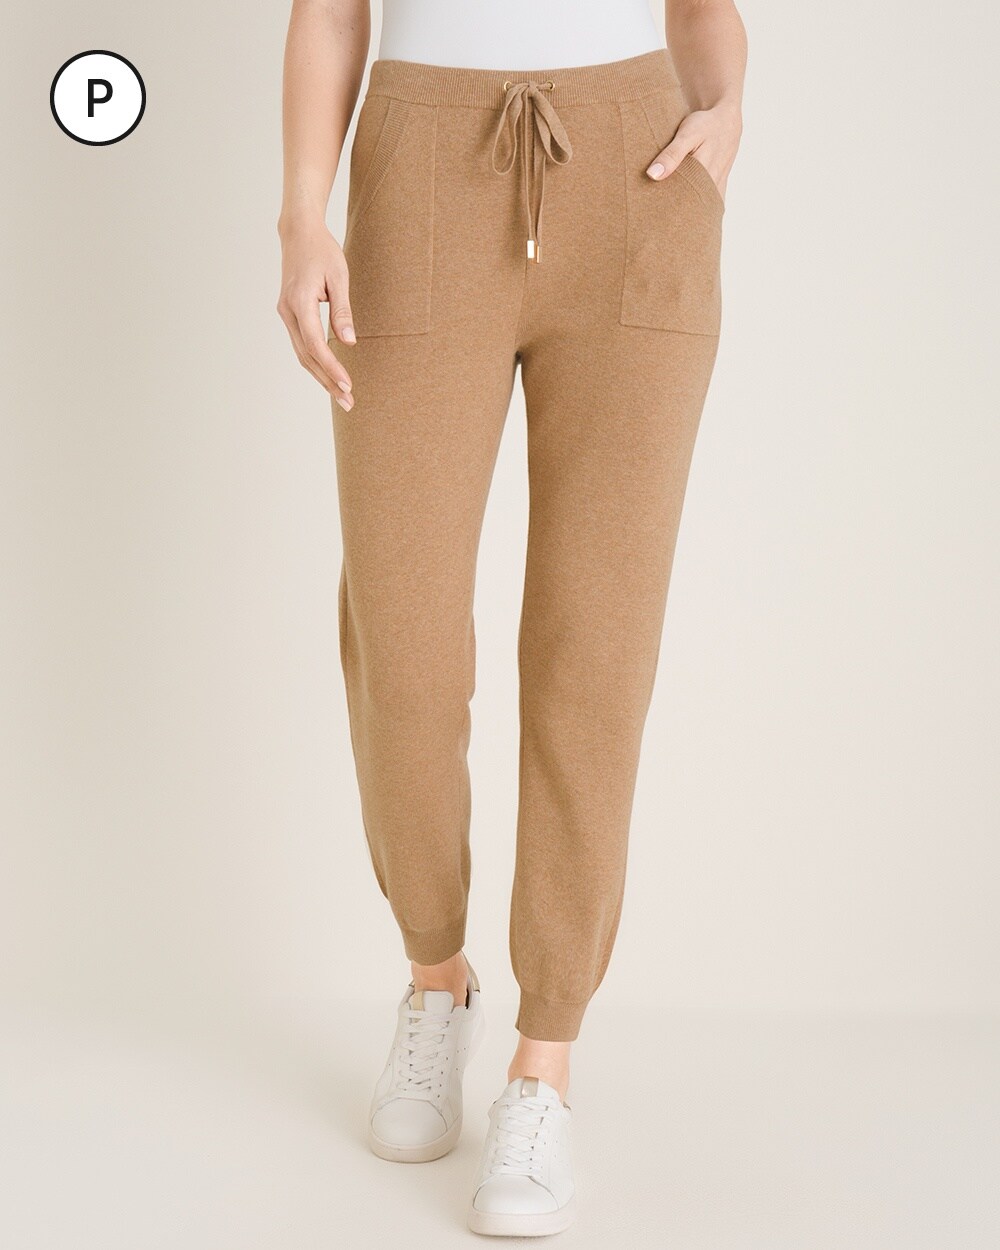 Zenergy Petite Cotton-Cashmere Blend Jogger Pants